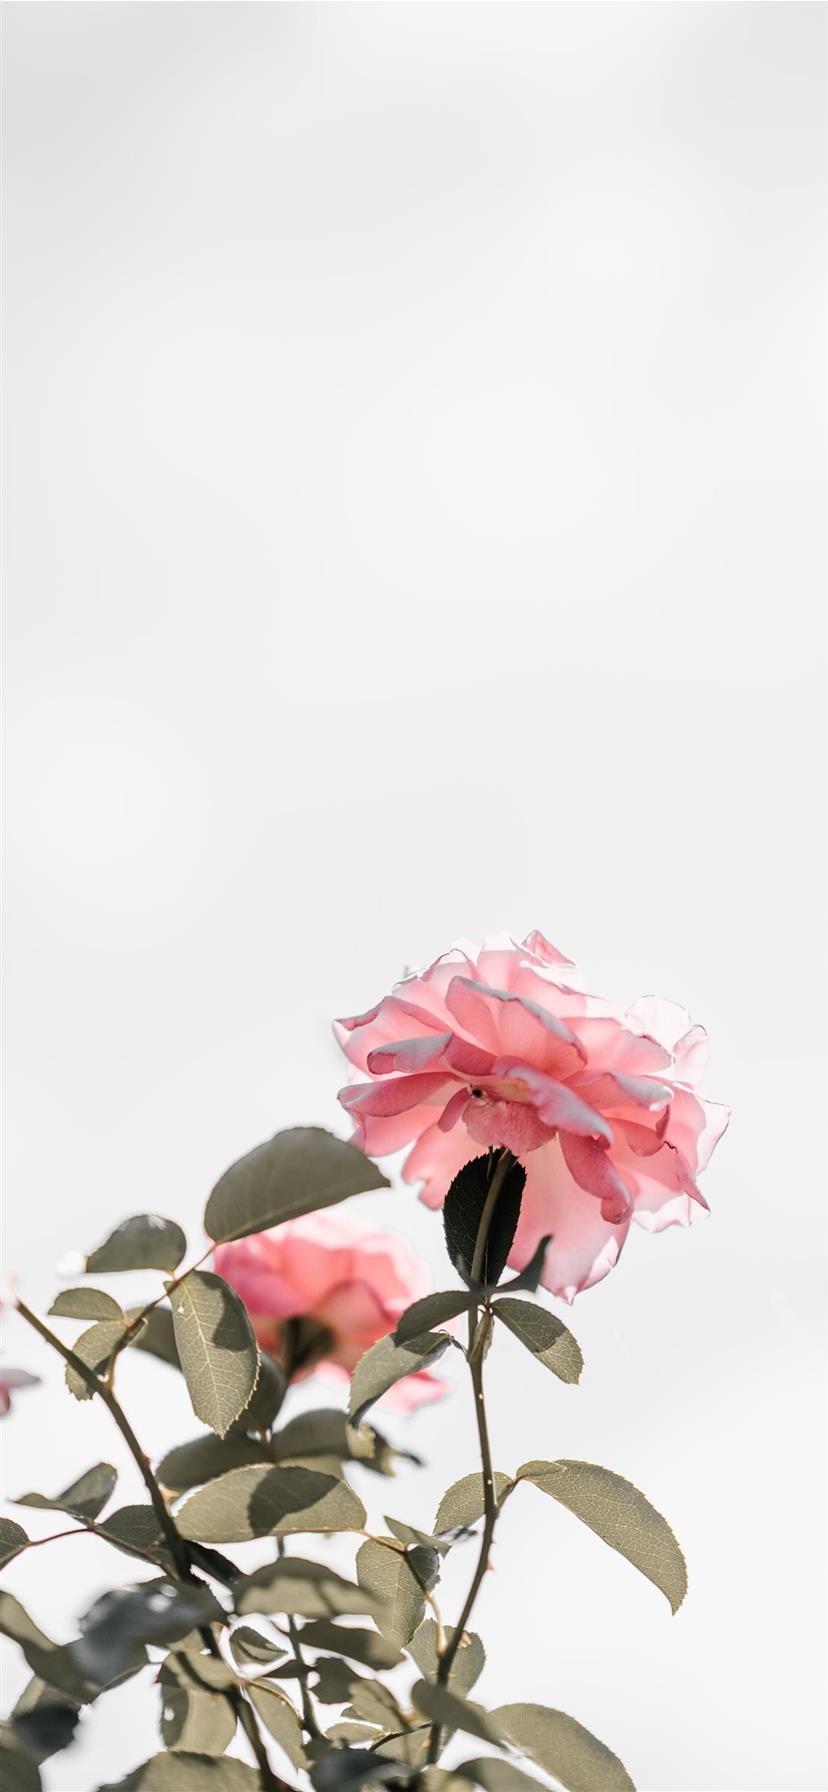 Hoa hồng hồng là biểu tượng cho tình yêu và sự trân trọng. Với hình ảnh này, bạn sẽ được ngắm nhìn vẻ đẹp tuyệt vời của hoa hồng hồng đang nở rộ và cảm nhận được giá trị và ý nghĩa của loài hoa này.